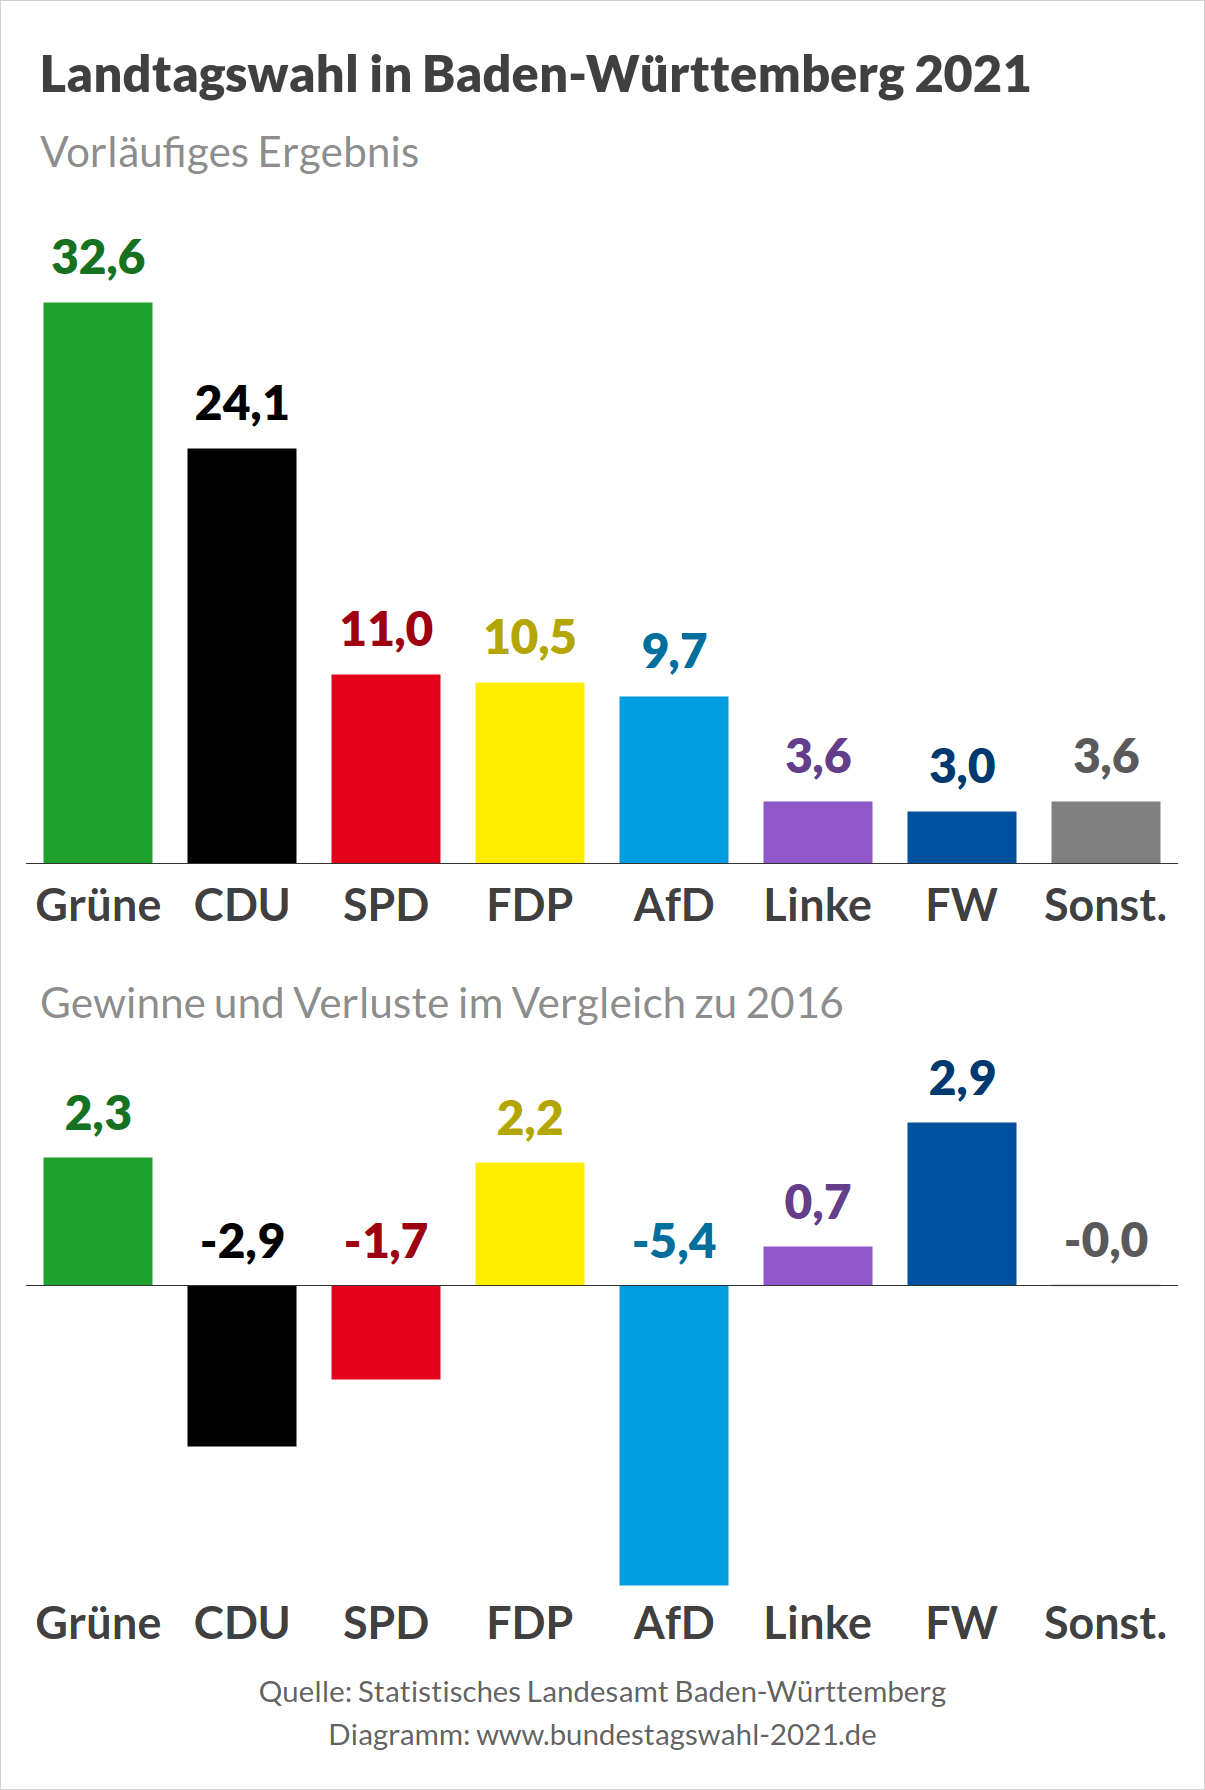 Ergebnis der Landtagswahl in Baden-Württemberg 2021 - Vorläufiges Wahlergebnis